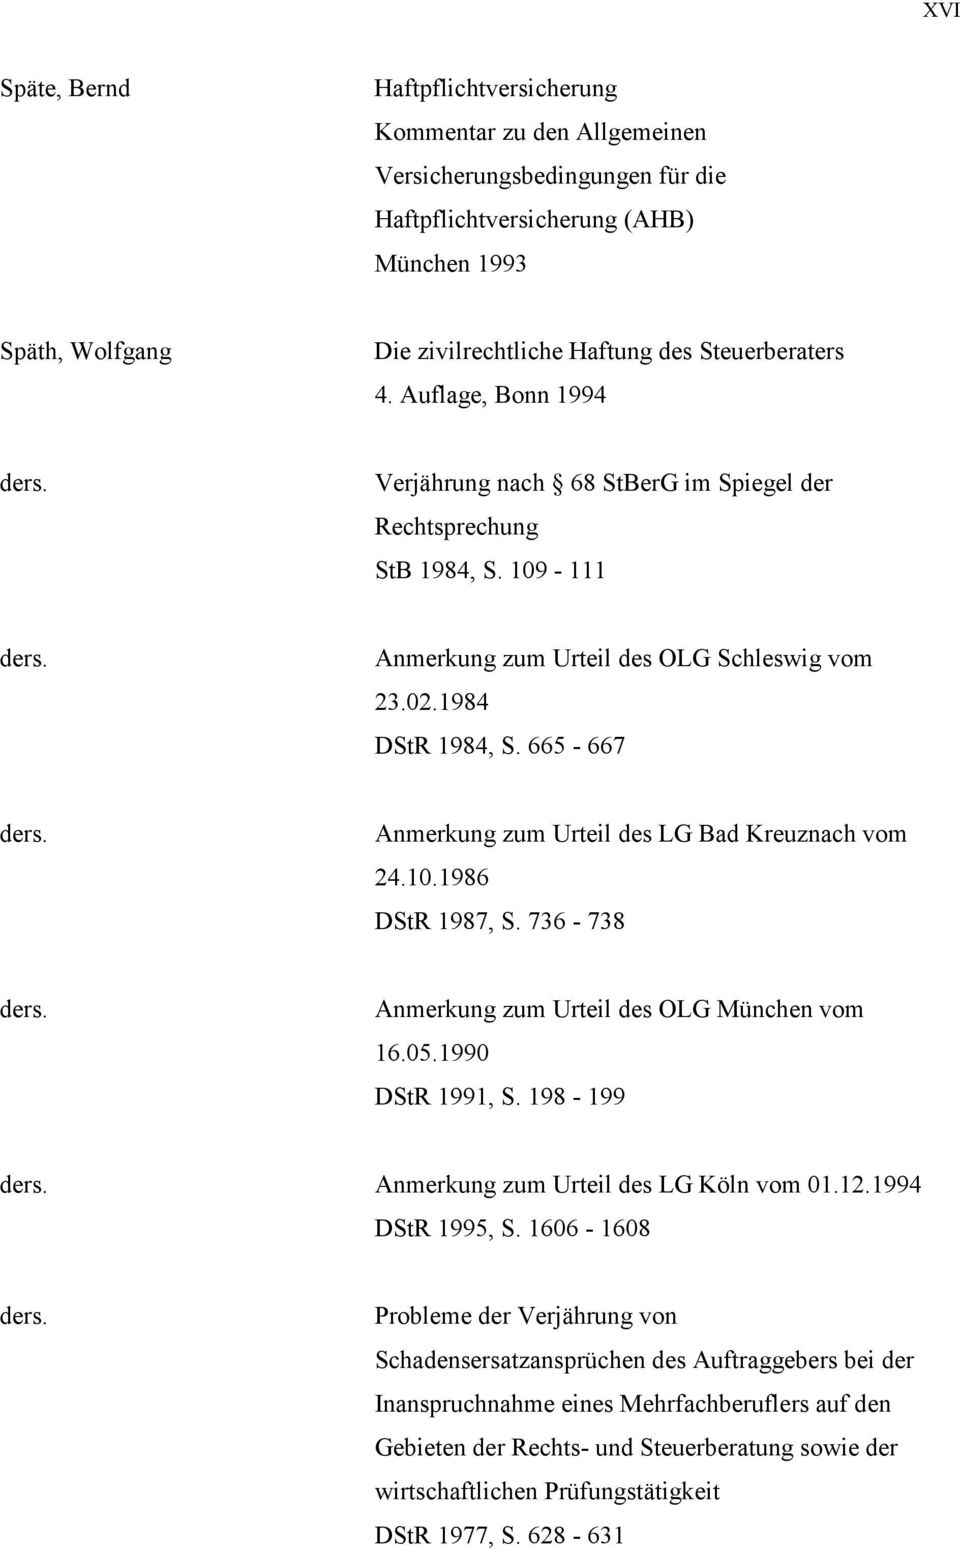 665-667 ders. Anmerkung zum Urteil des LG Bad Kreuznach vom 24.10.1986 DStR 1987, S. 736-738 ders. Anmerkung zum Urteil des OLG München vom 16.05.1990 DStR 1991, S. 198-199 ders.